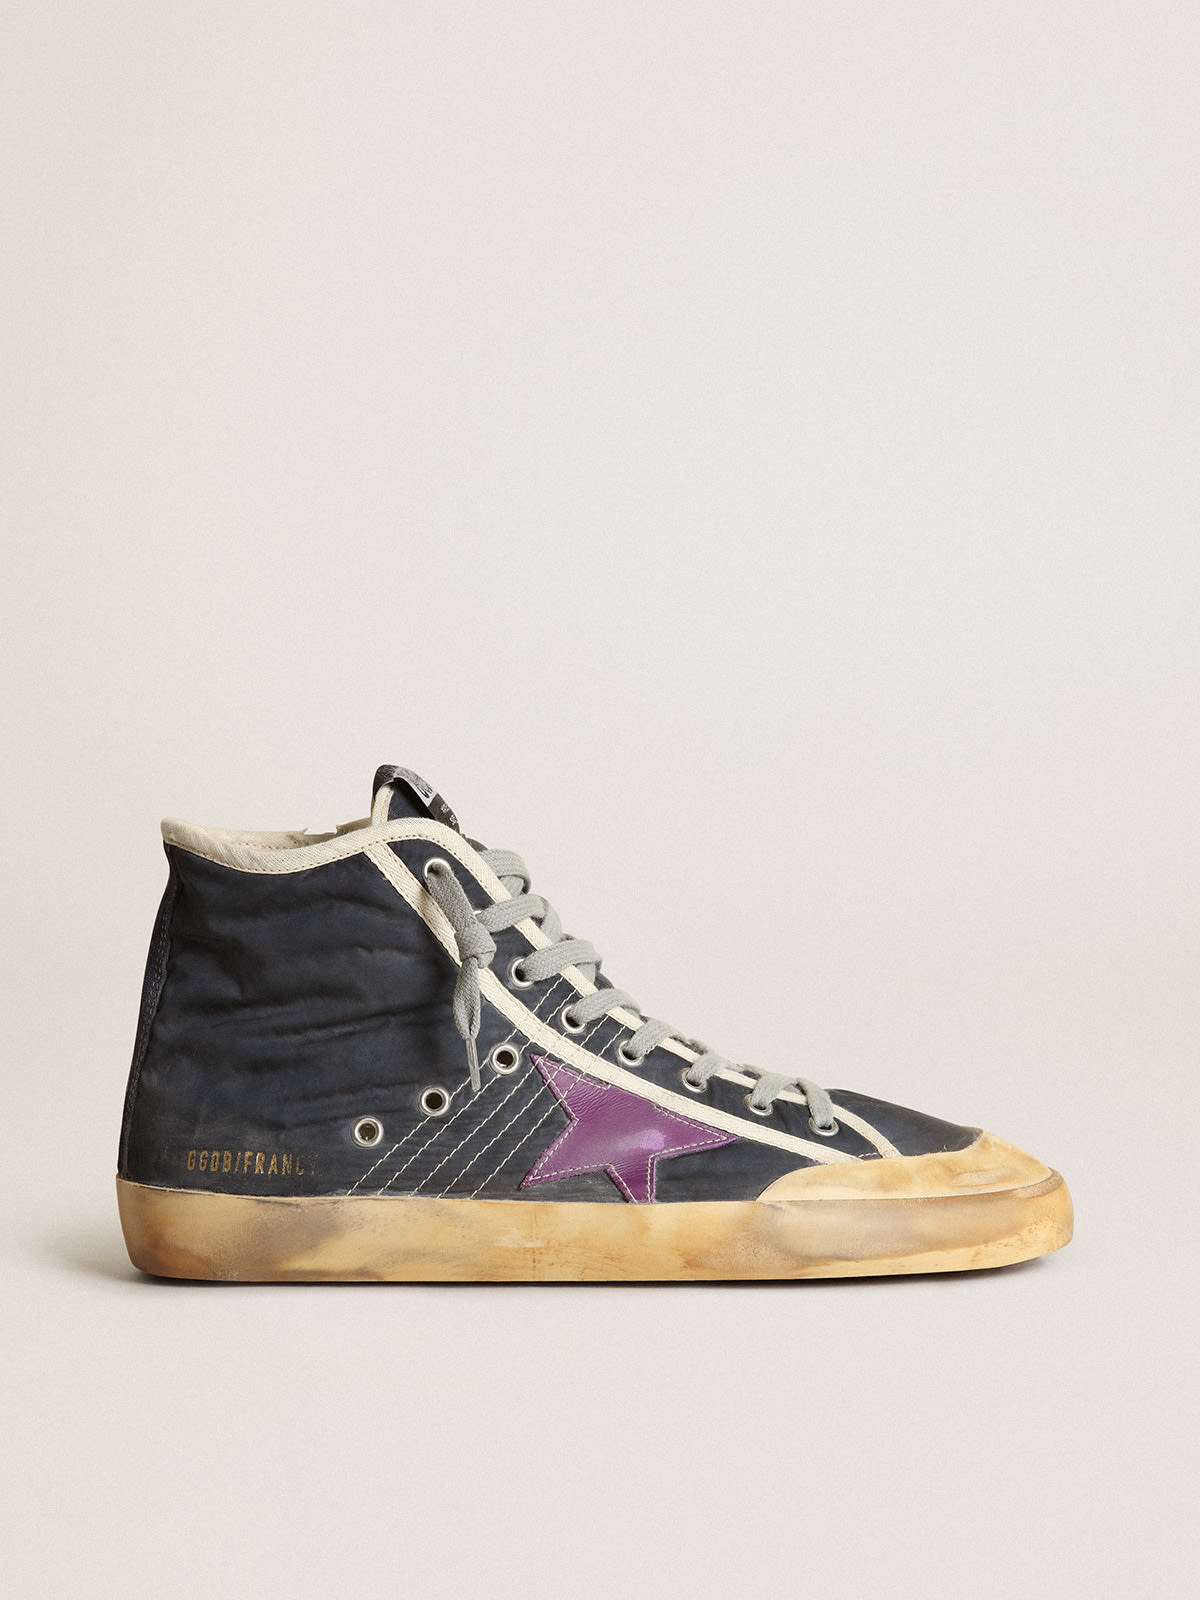 Golden Goose - Zapatillas deportivas Francy Penstar de nailon azul marino con estrella de piel violeta y refuerzo del talón de ante negro in 